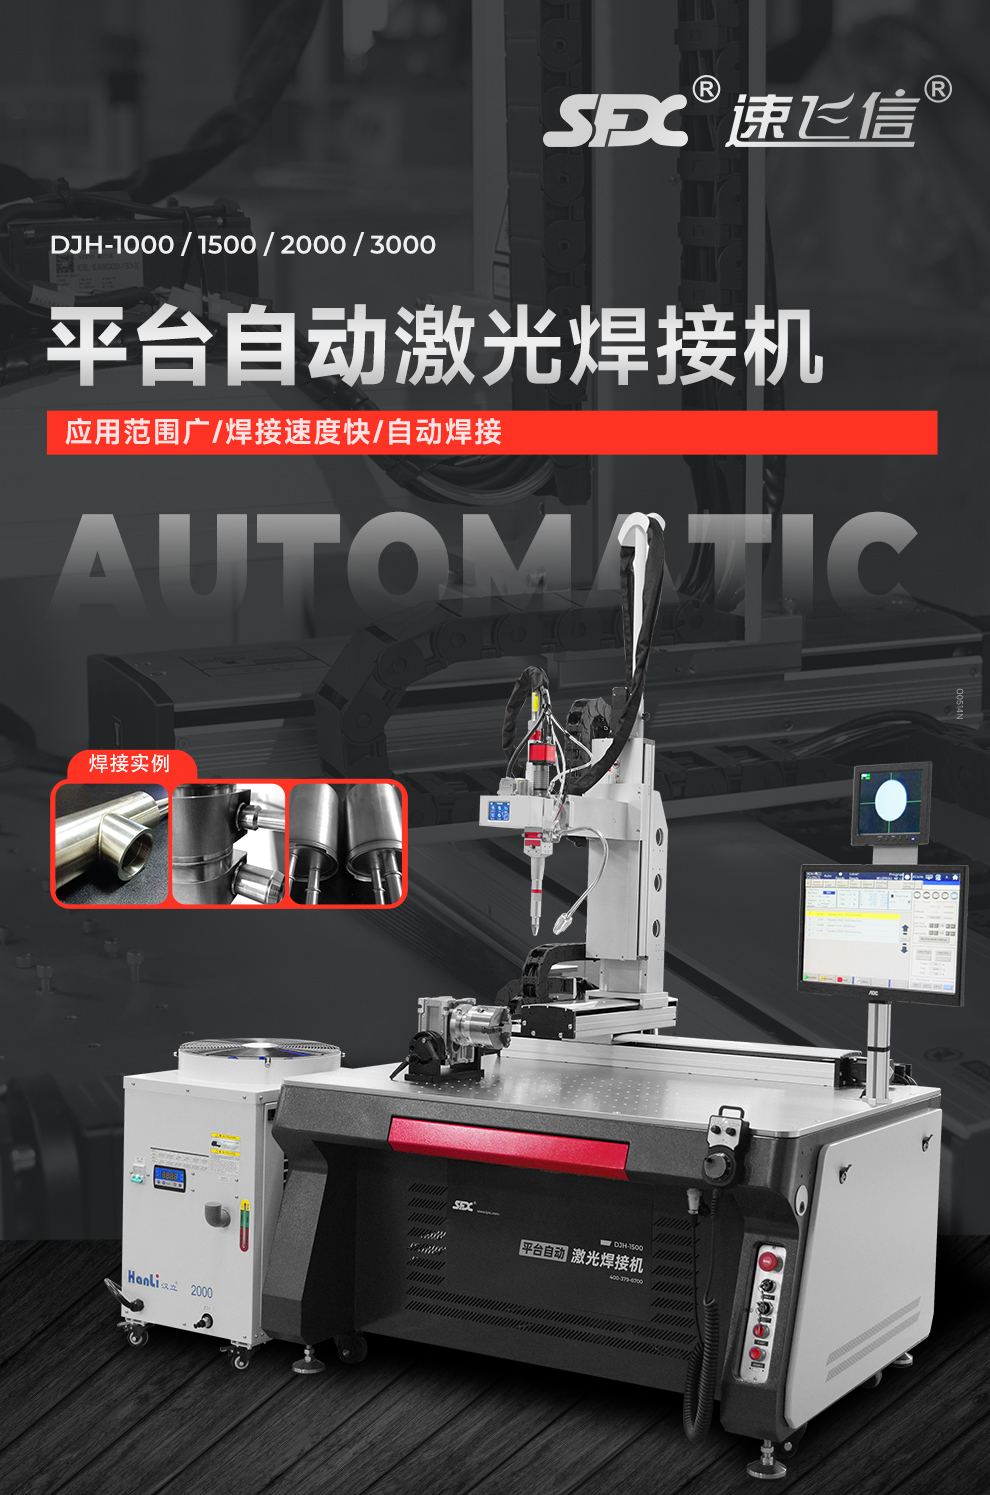 【待审】内贸-平台自动激光焊接机--详情O0520牛力_01.jpg